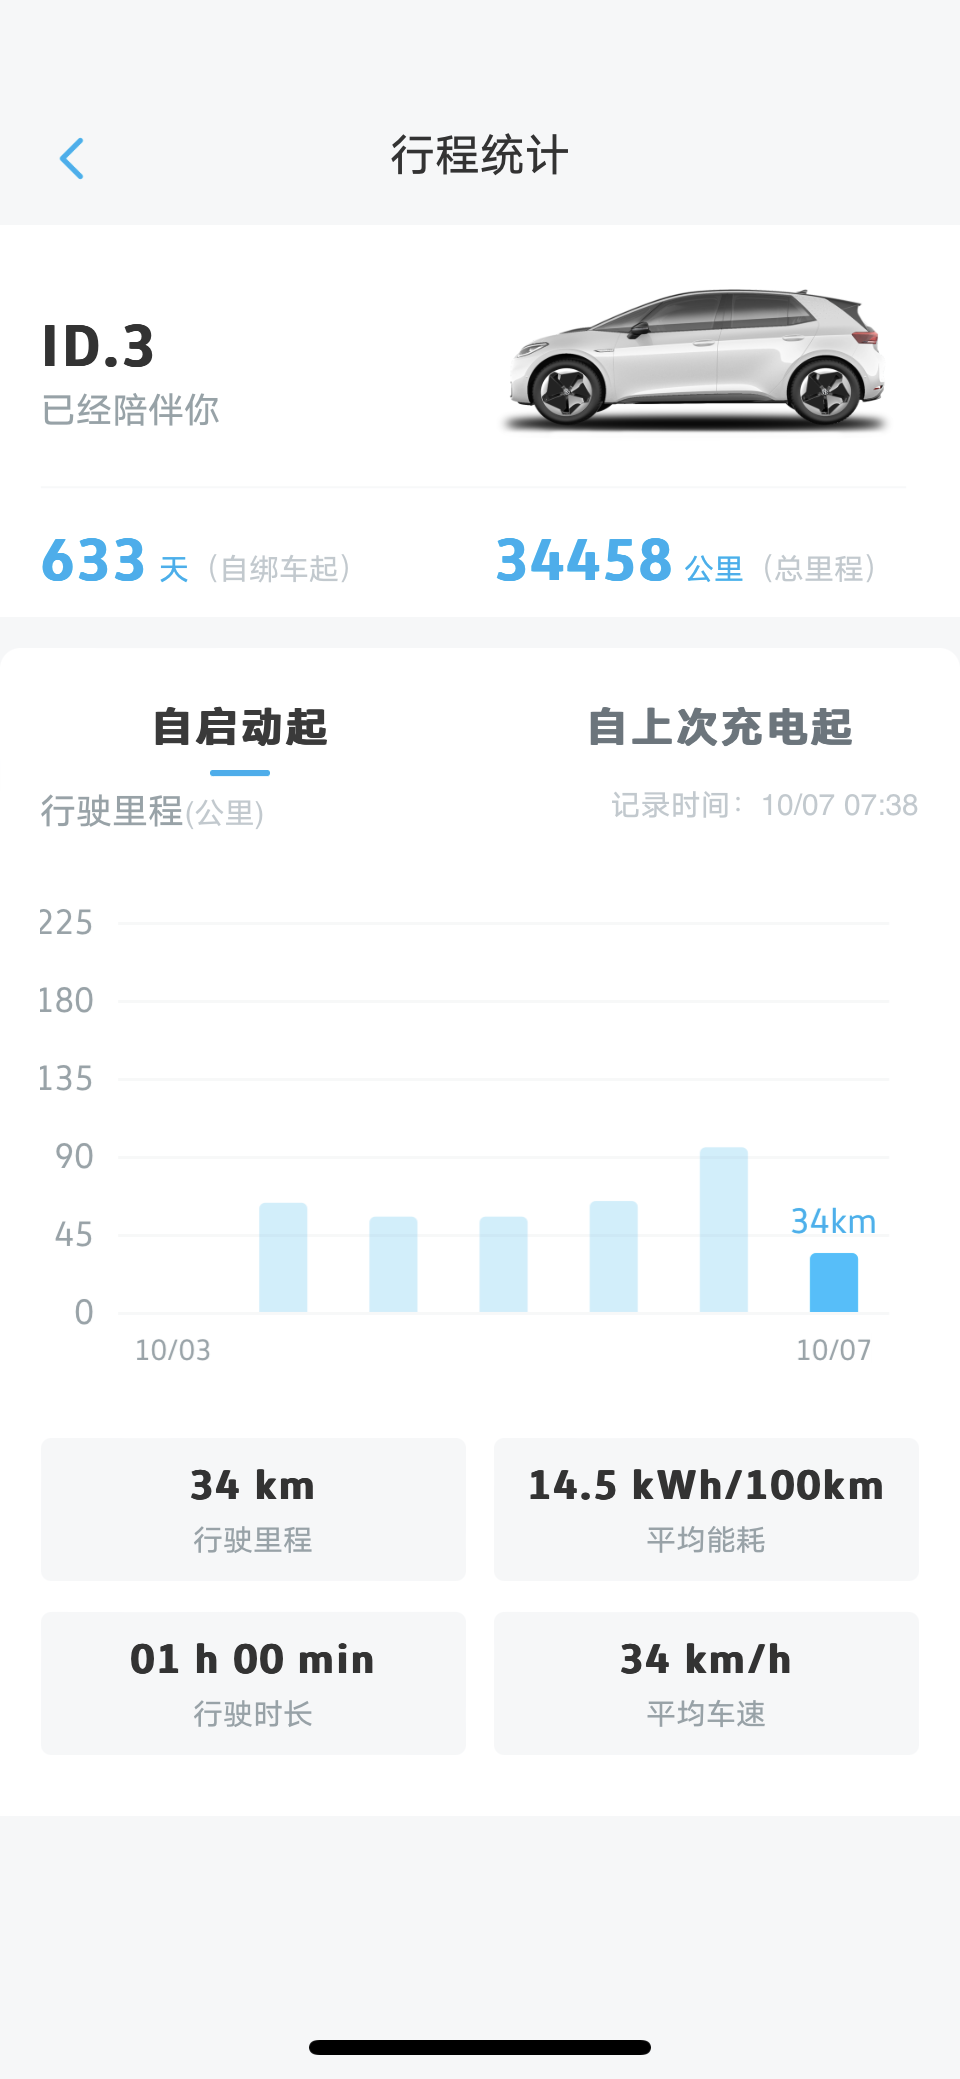 城市：上海
-温度：14度-19度
-车型型号：ID3 prue
-能耗表现：14.50kWh
-其他备注：高速 +地面 全程34公里，平均时速34km；未开空调，一档风，经济模式